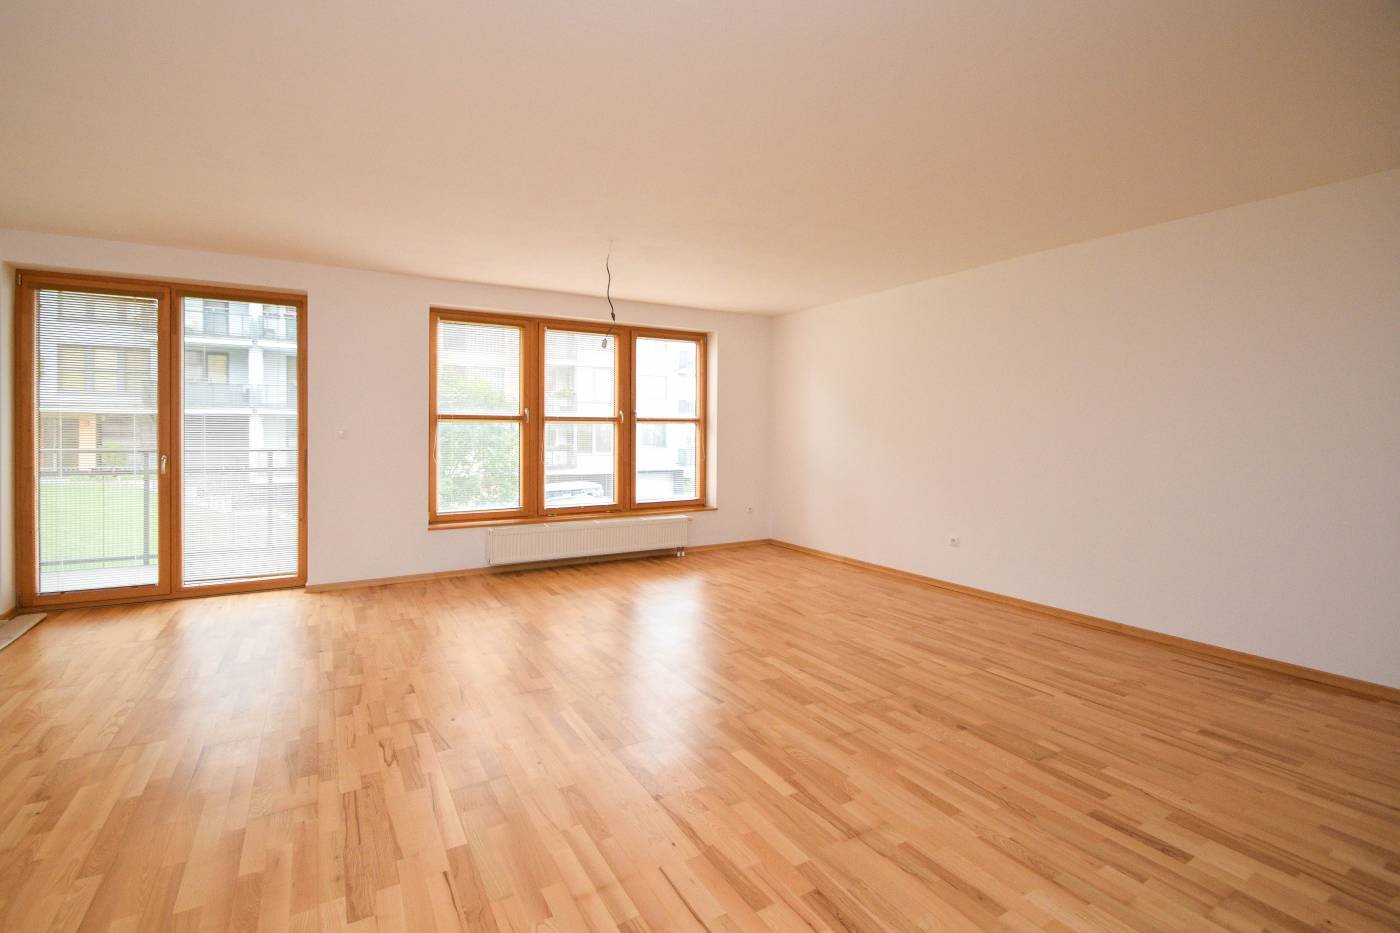 Пустая комната без мебели. Интерьер комнаты без мебели. Пустая комната. Пустая квартира.